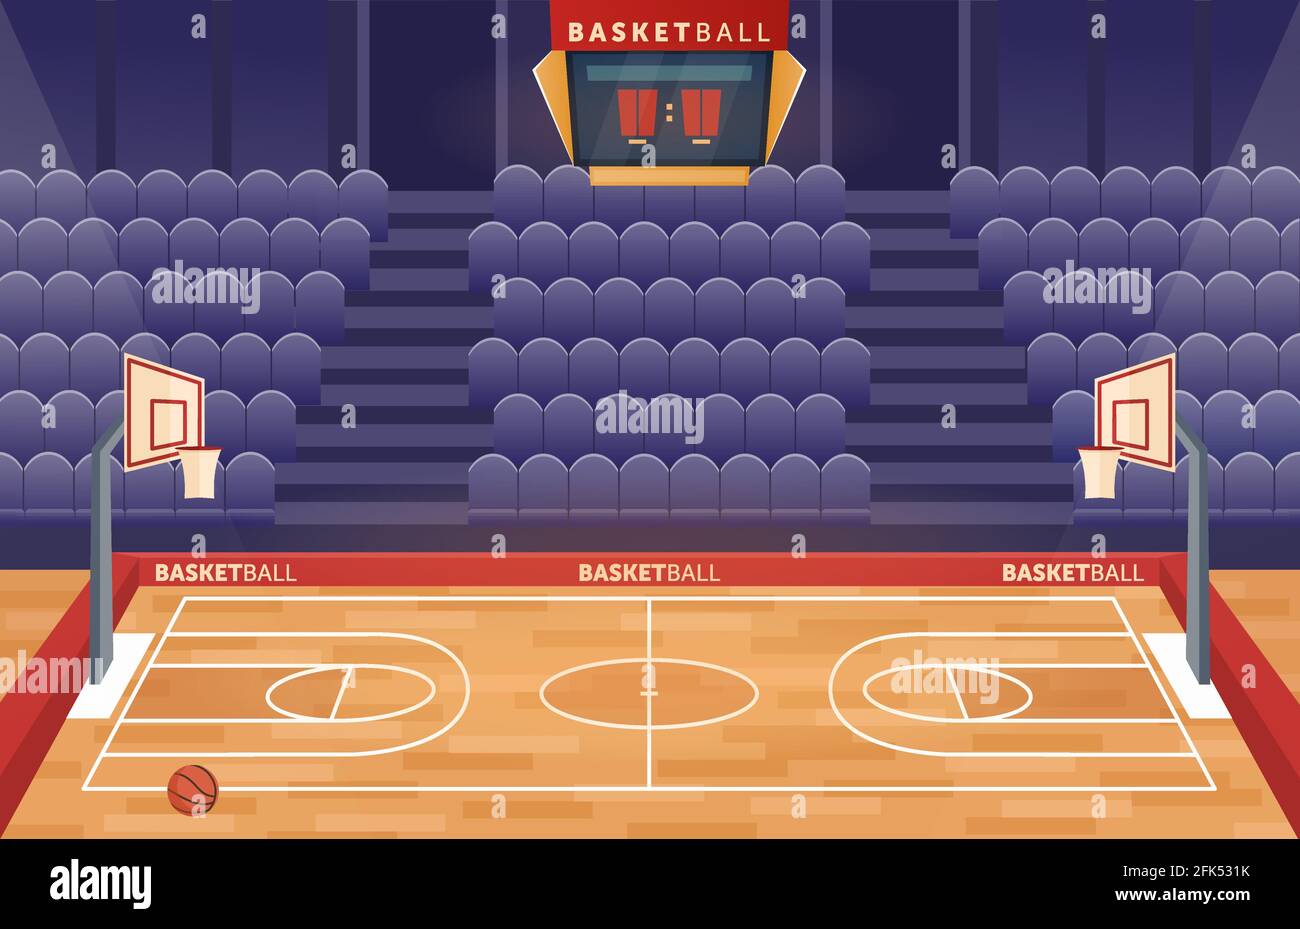 Basketballplatz Arena Stadion, Cartoon leeren Halle Feld Basketball-Team-Spiel zu spielen Stock Vektor